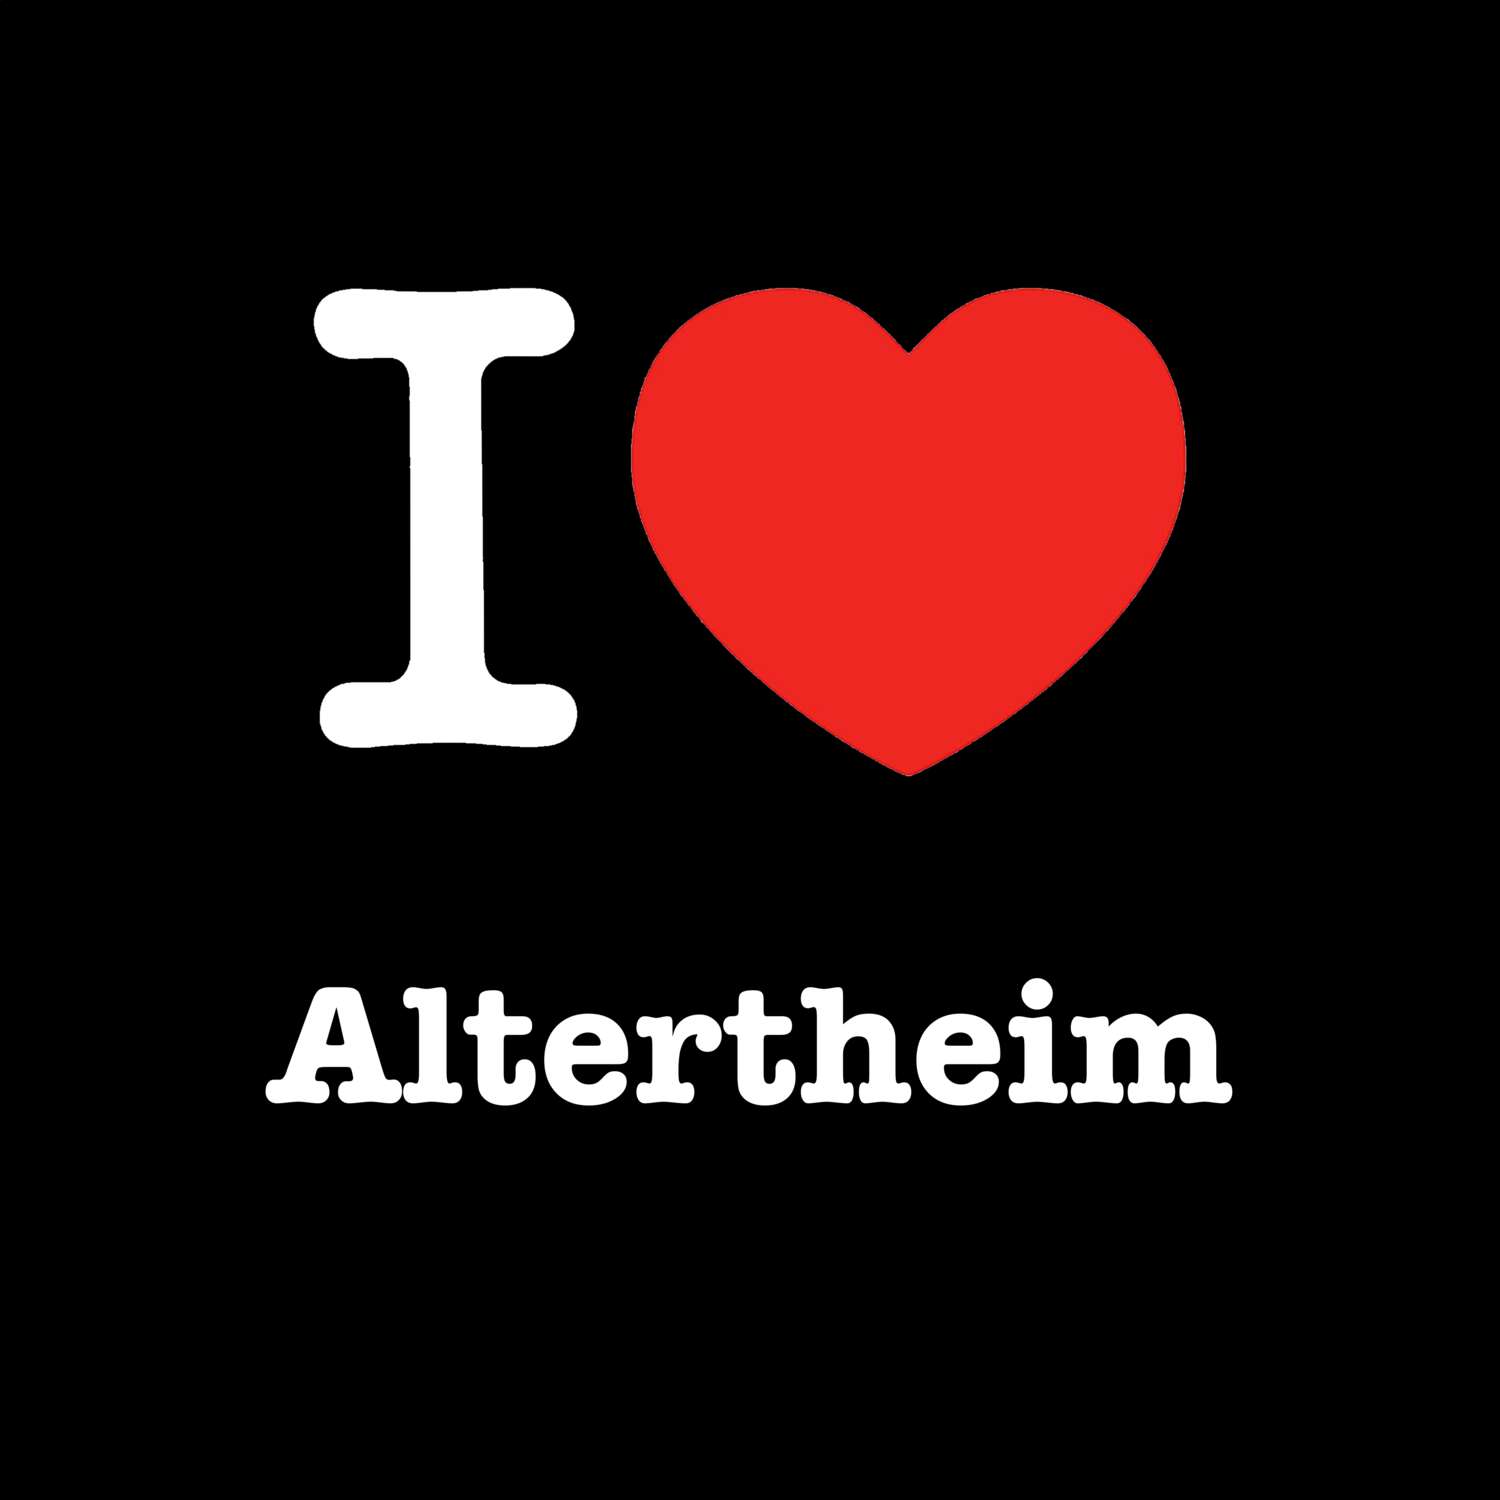 Altertheim T-Shirt »I love«